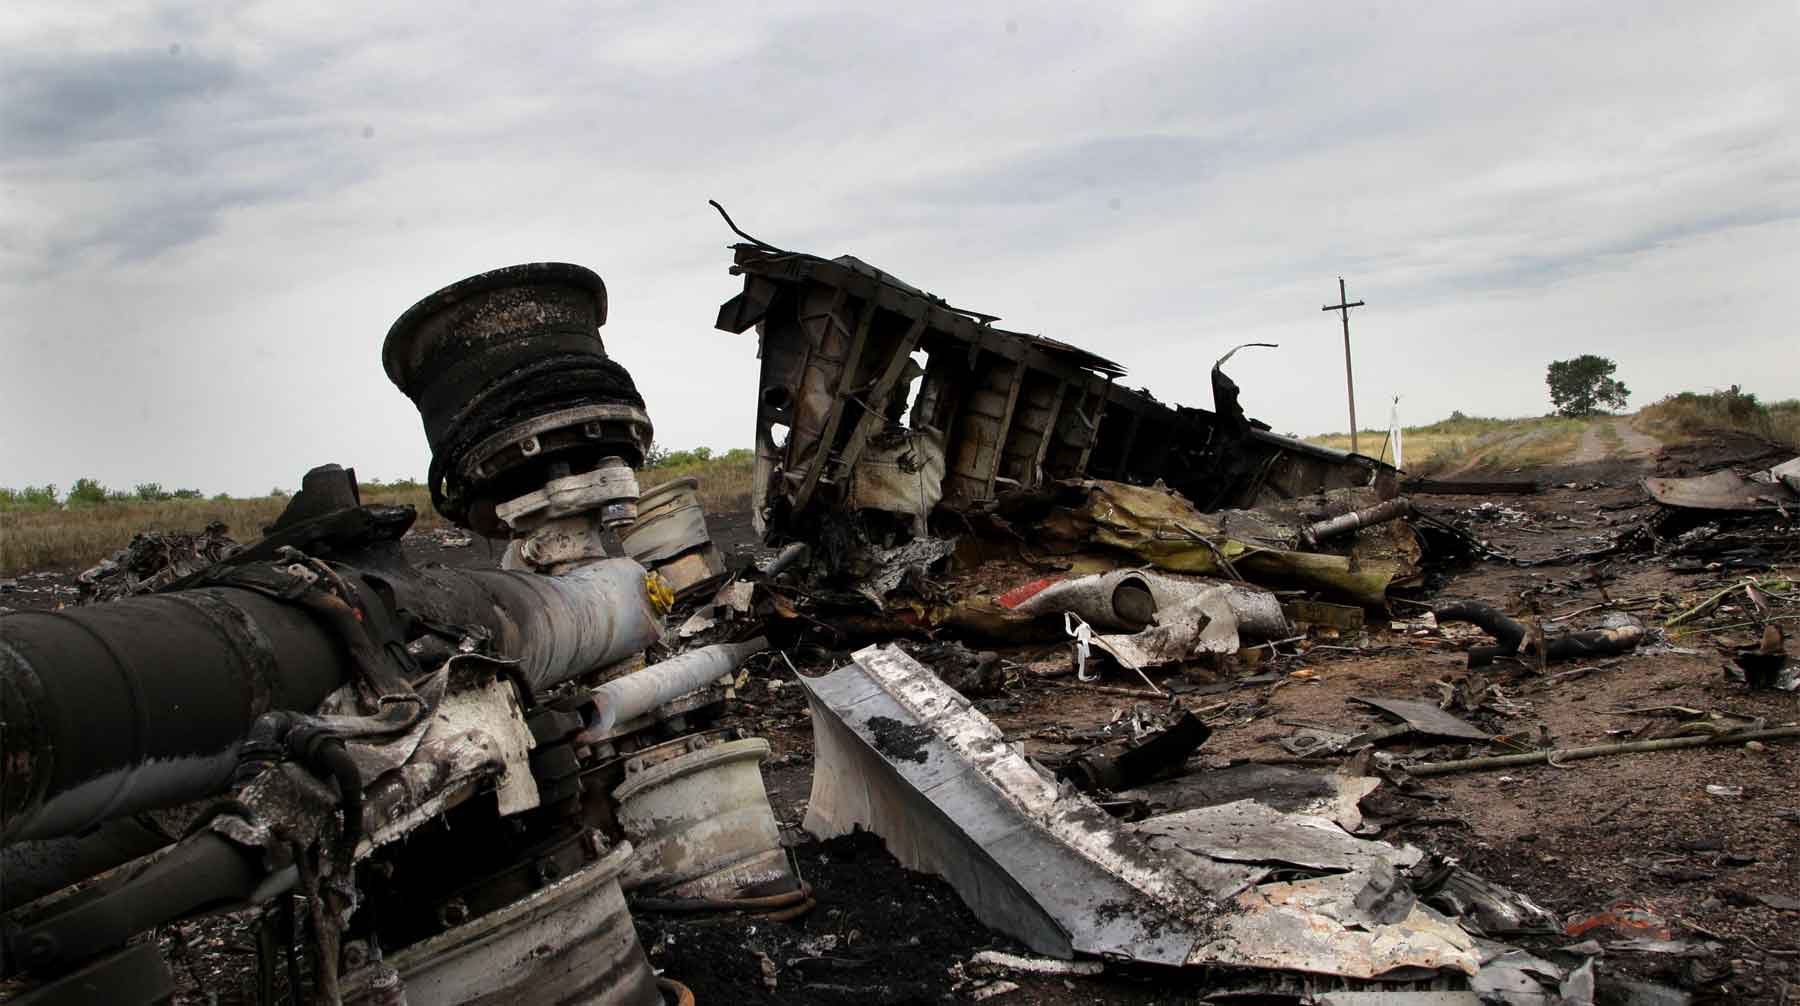 Dailystorm - Власти ДНР в марте арестовали обвиняемого по делу MH17, чтобы его не похитила Украина